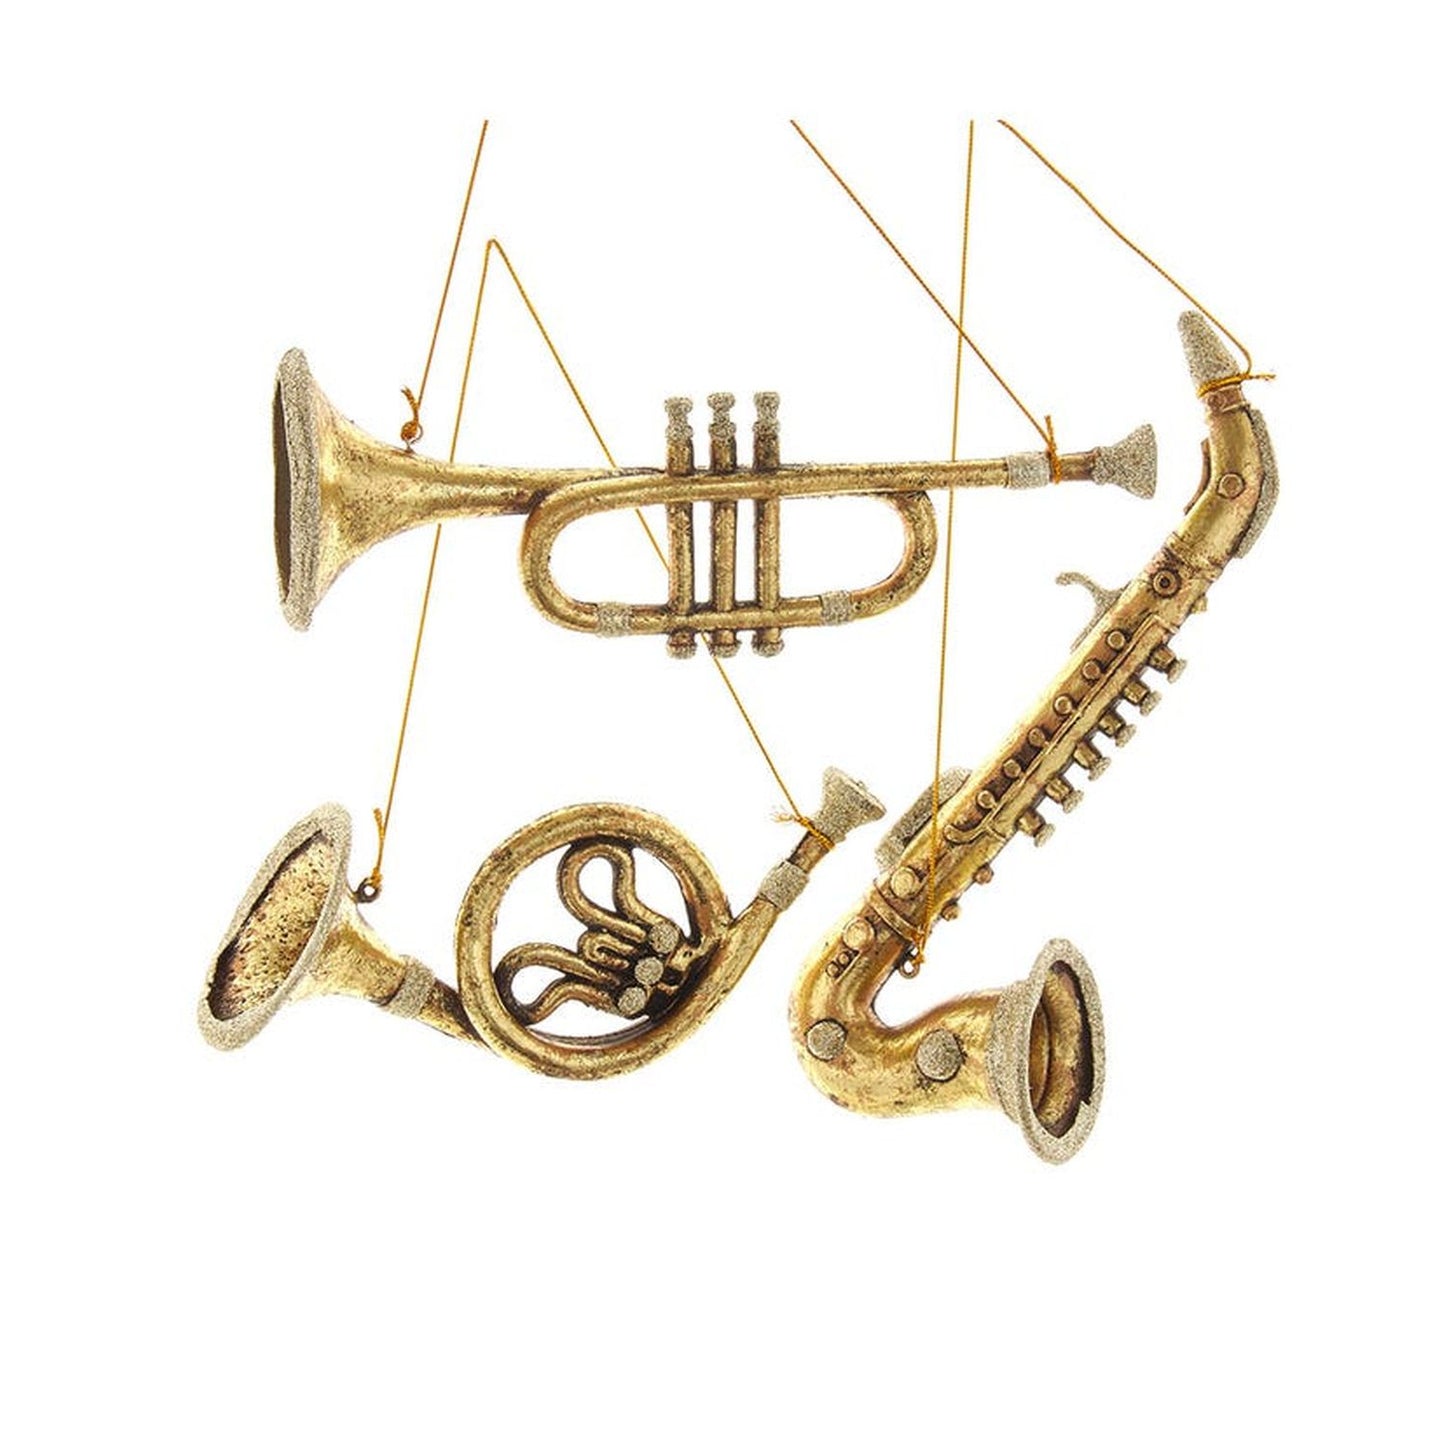 Kurt Adler 8-10" Antique Gold Musical Instrument Ornaments, Set Of 3, Assortment